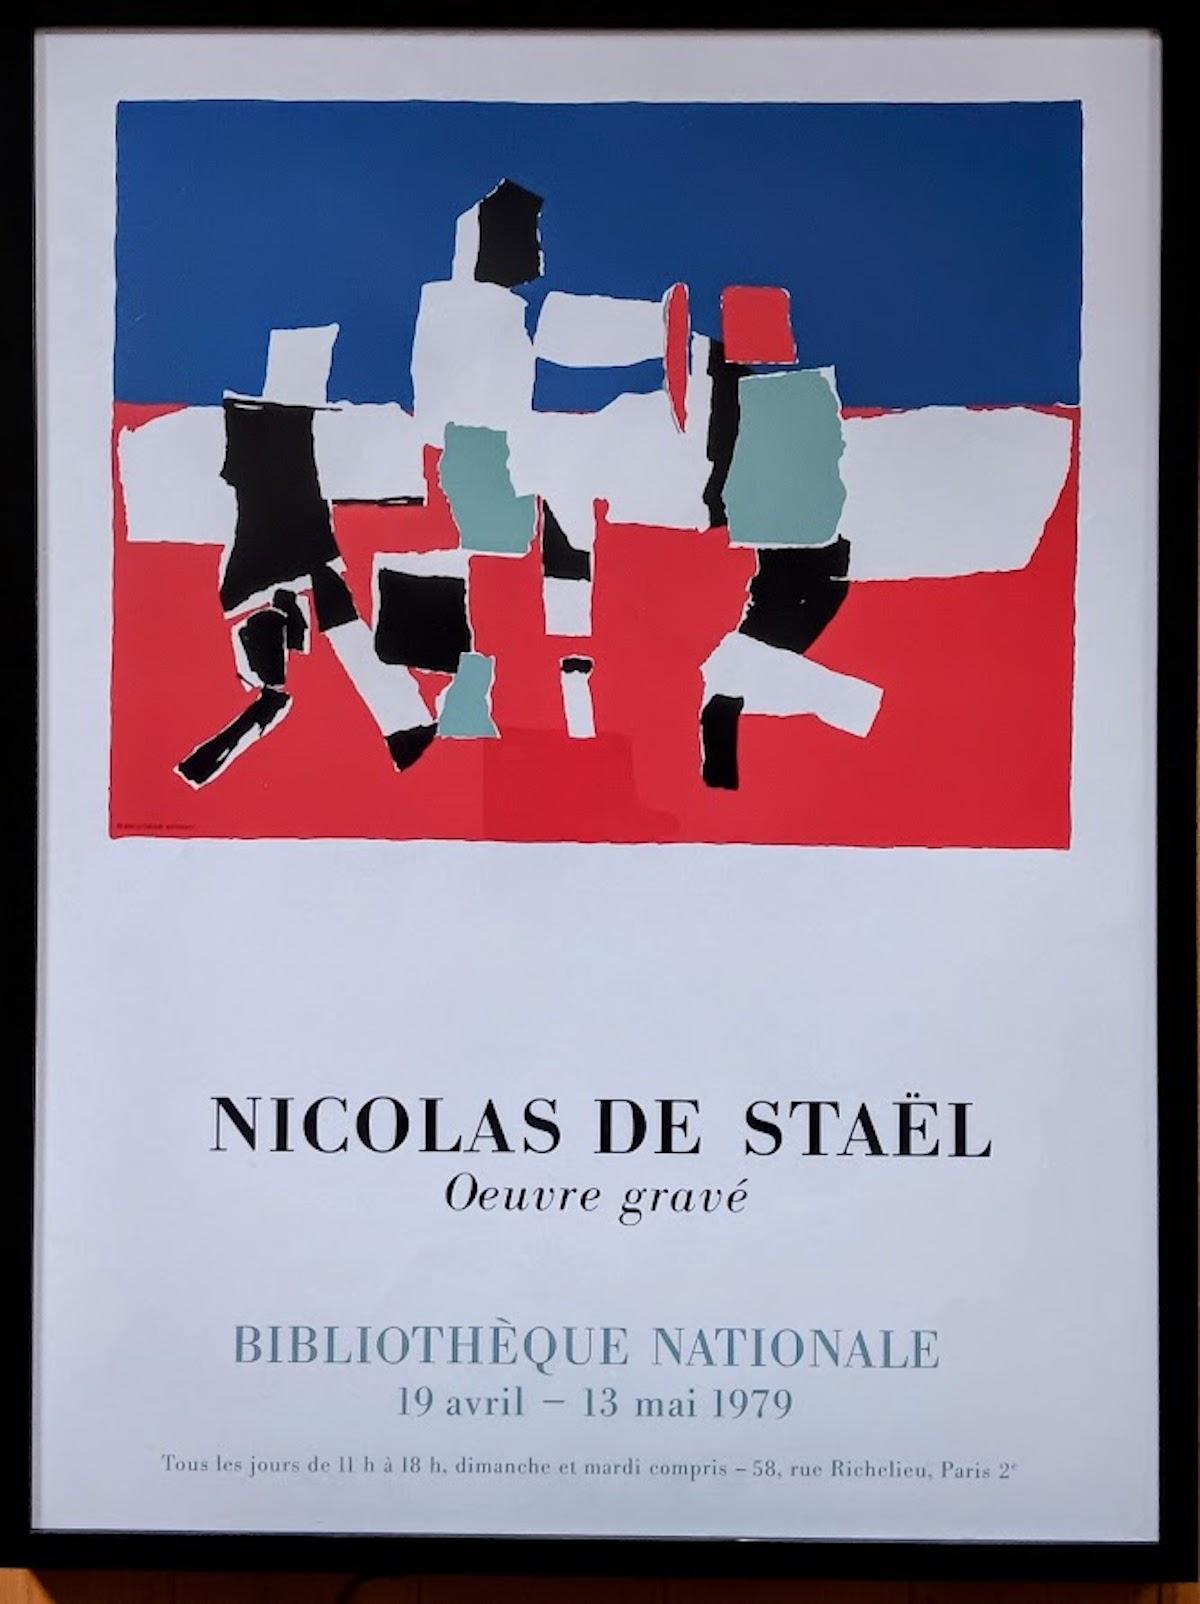 Nicolas de Stael (after) Abstract Print -  Original Print Poster by Nicolas de Stael, Oeuvre Gravé, 1979